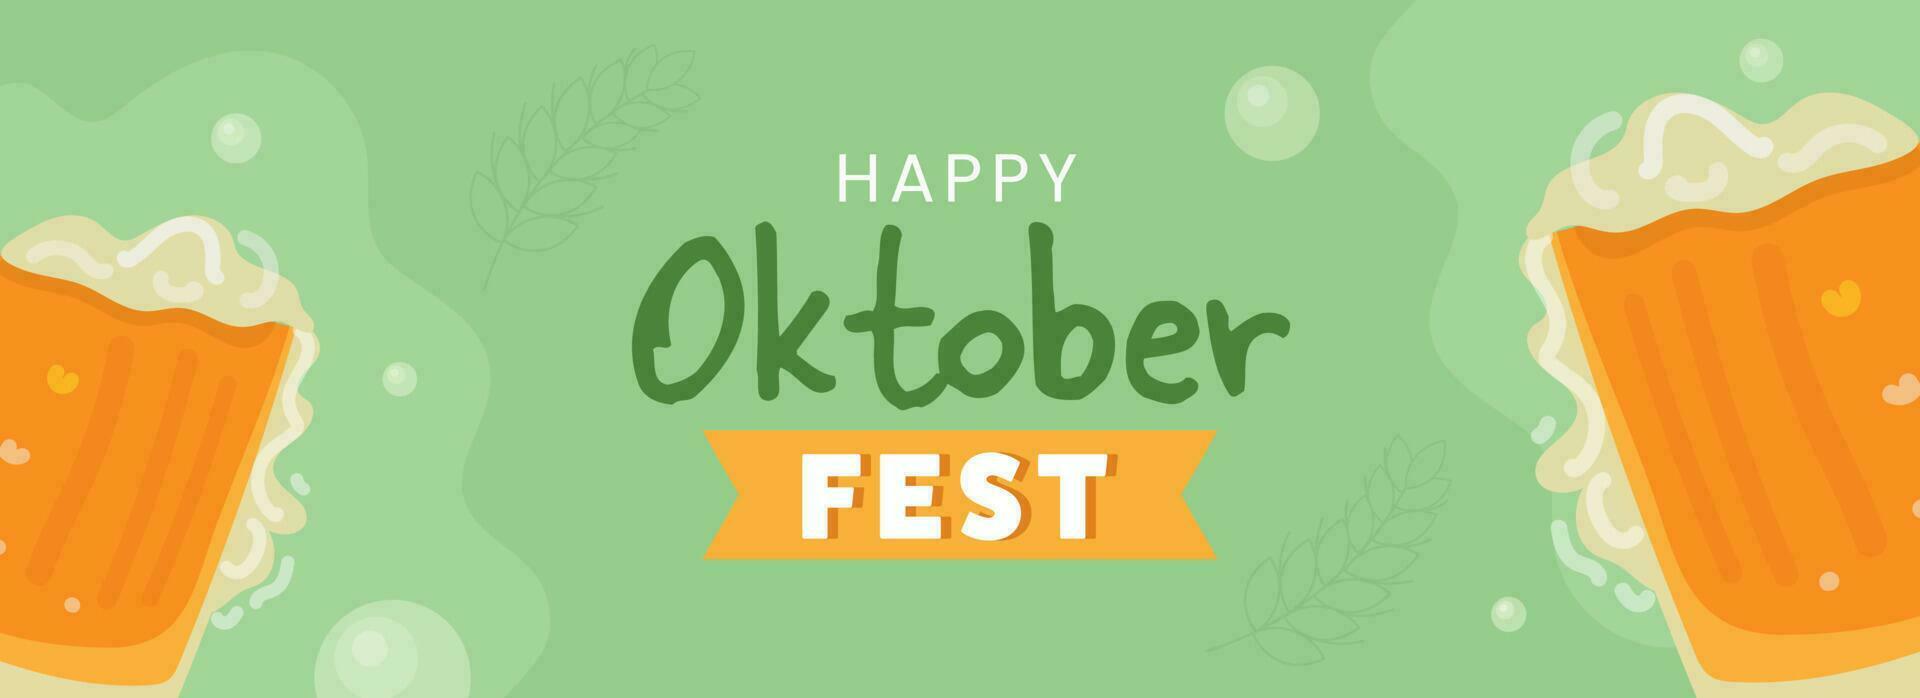 Lycklig oktoberfest firande baner eller rubrik design med öl muggar på grön bakgrund. vektor